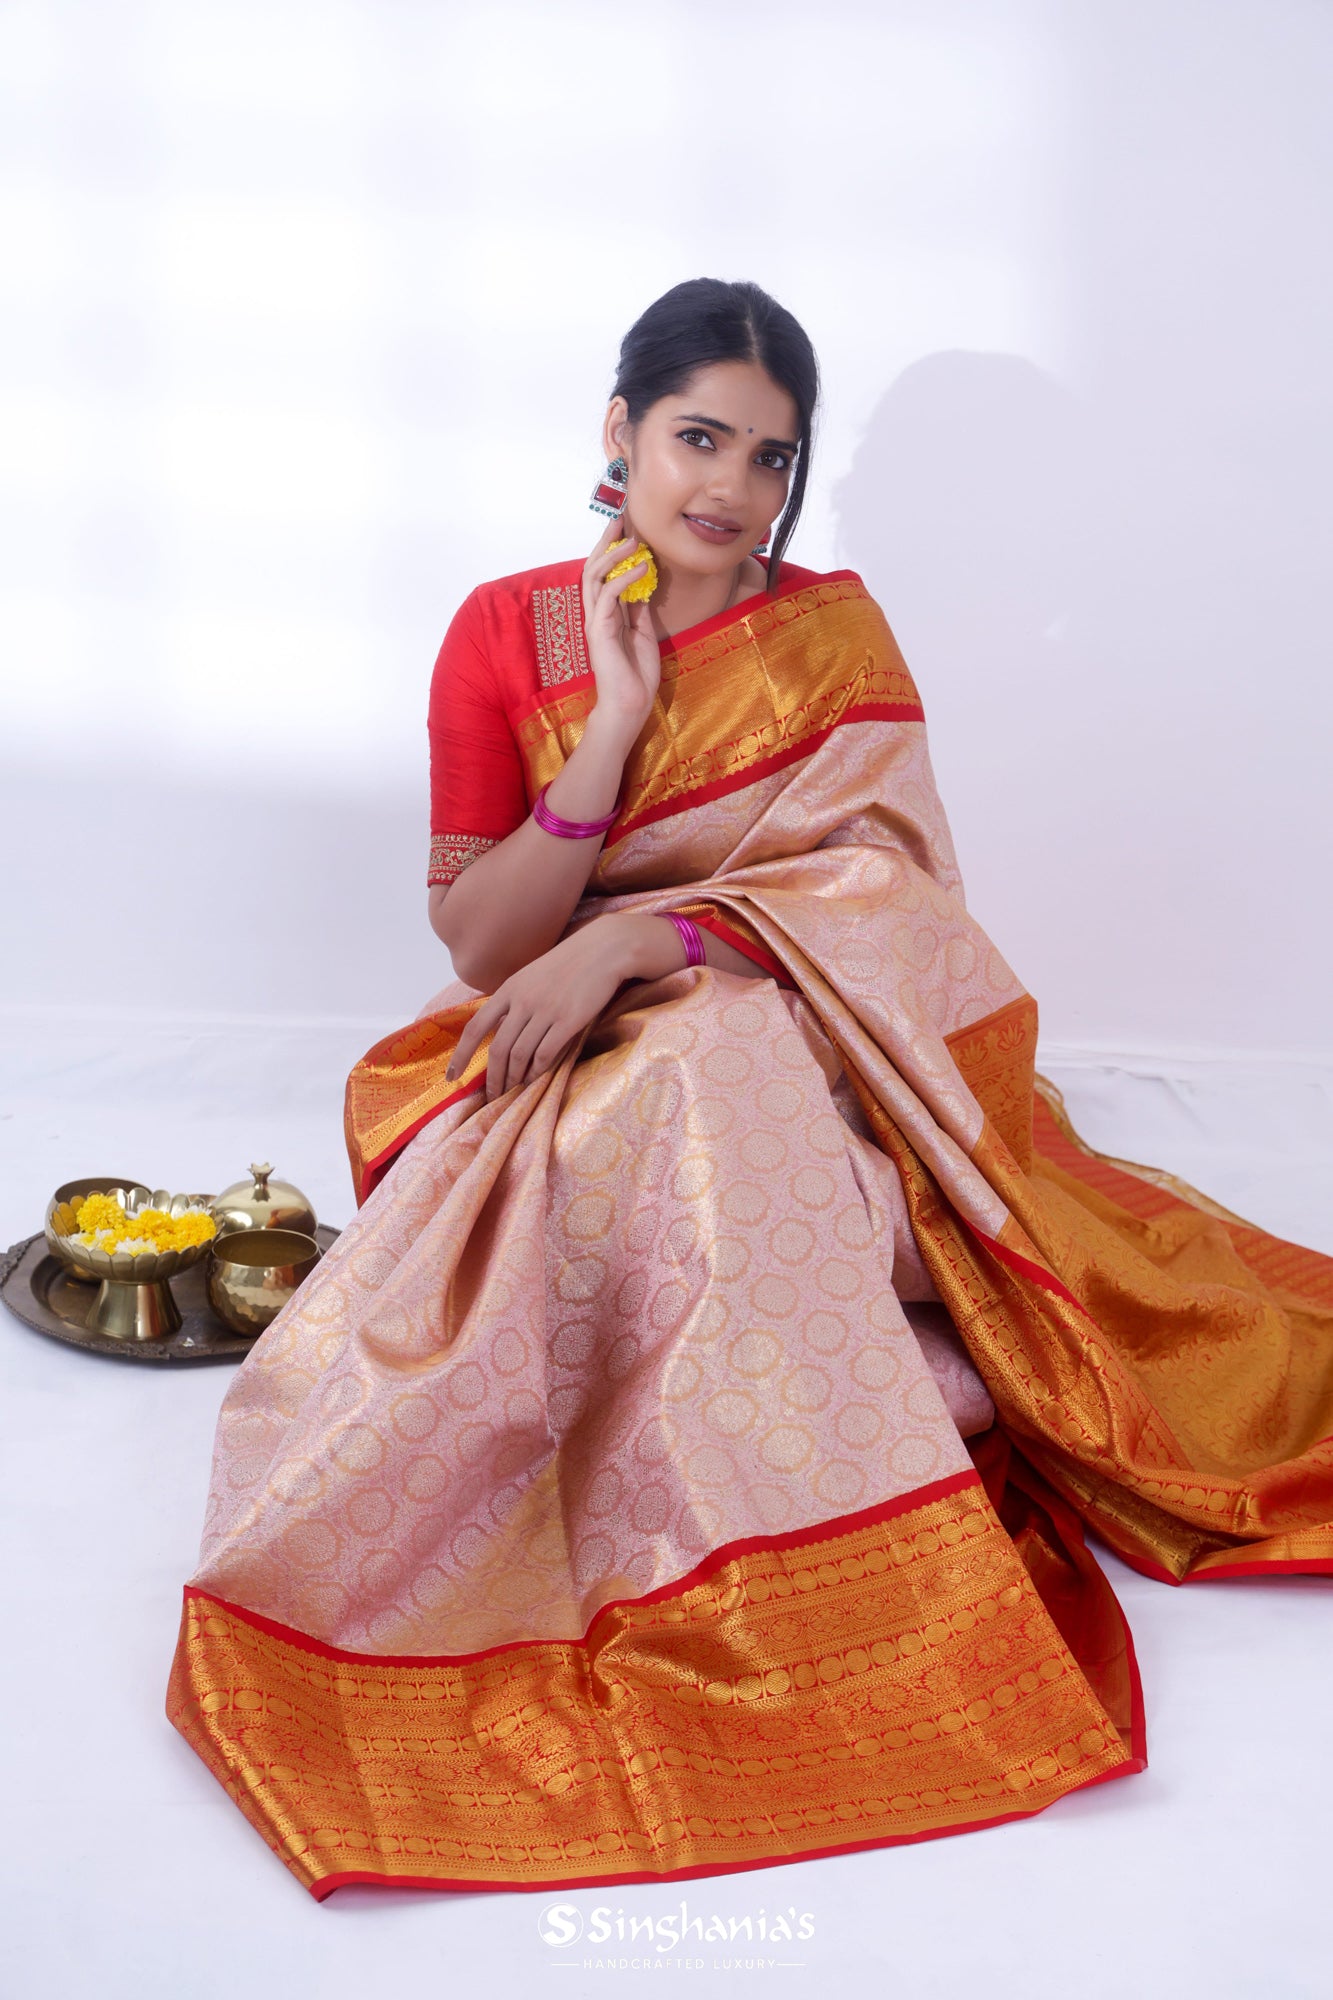 South Look Saree  South Indian Saree Look: Embracing Tradition